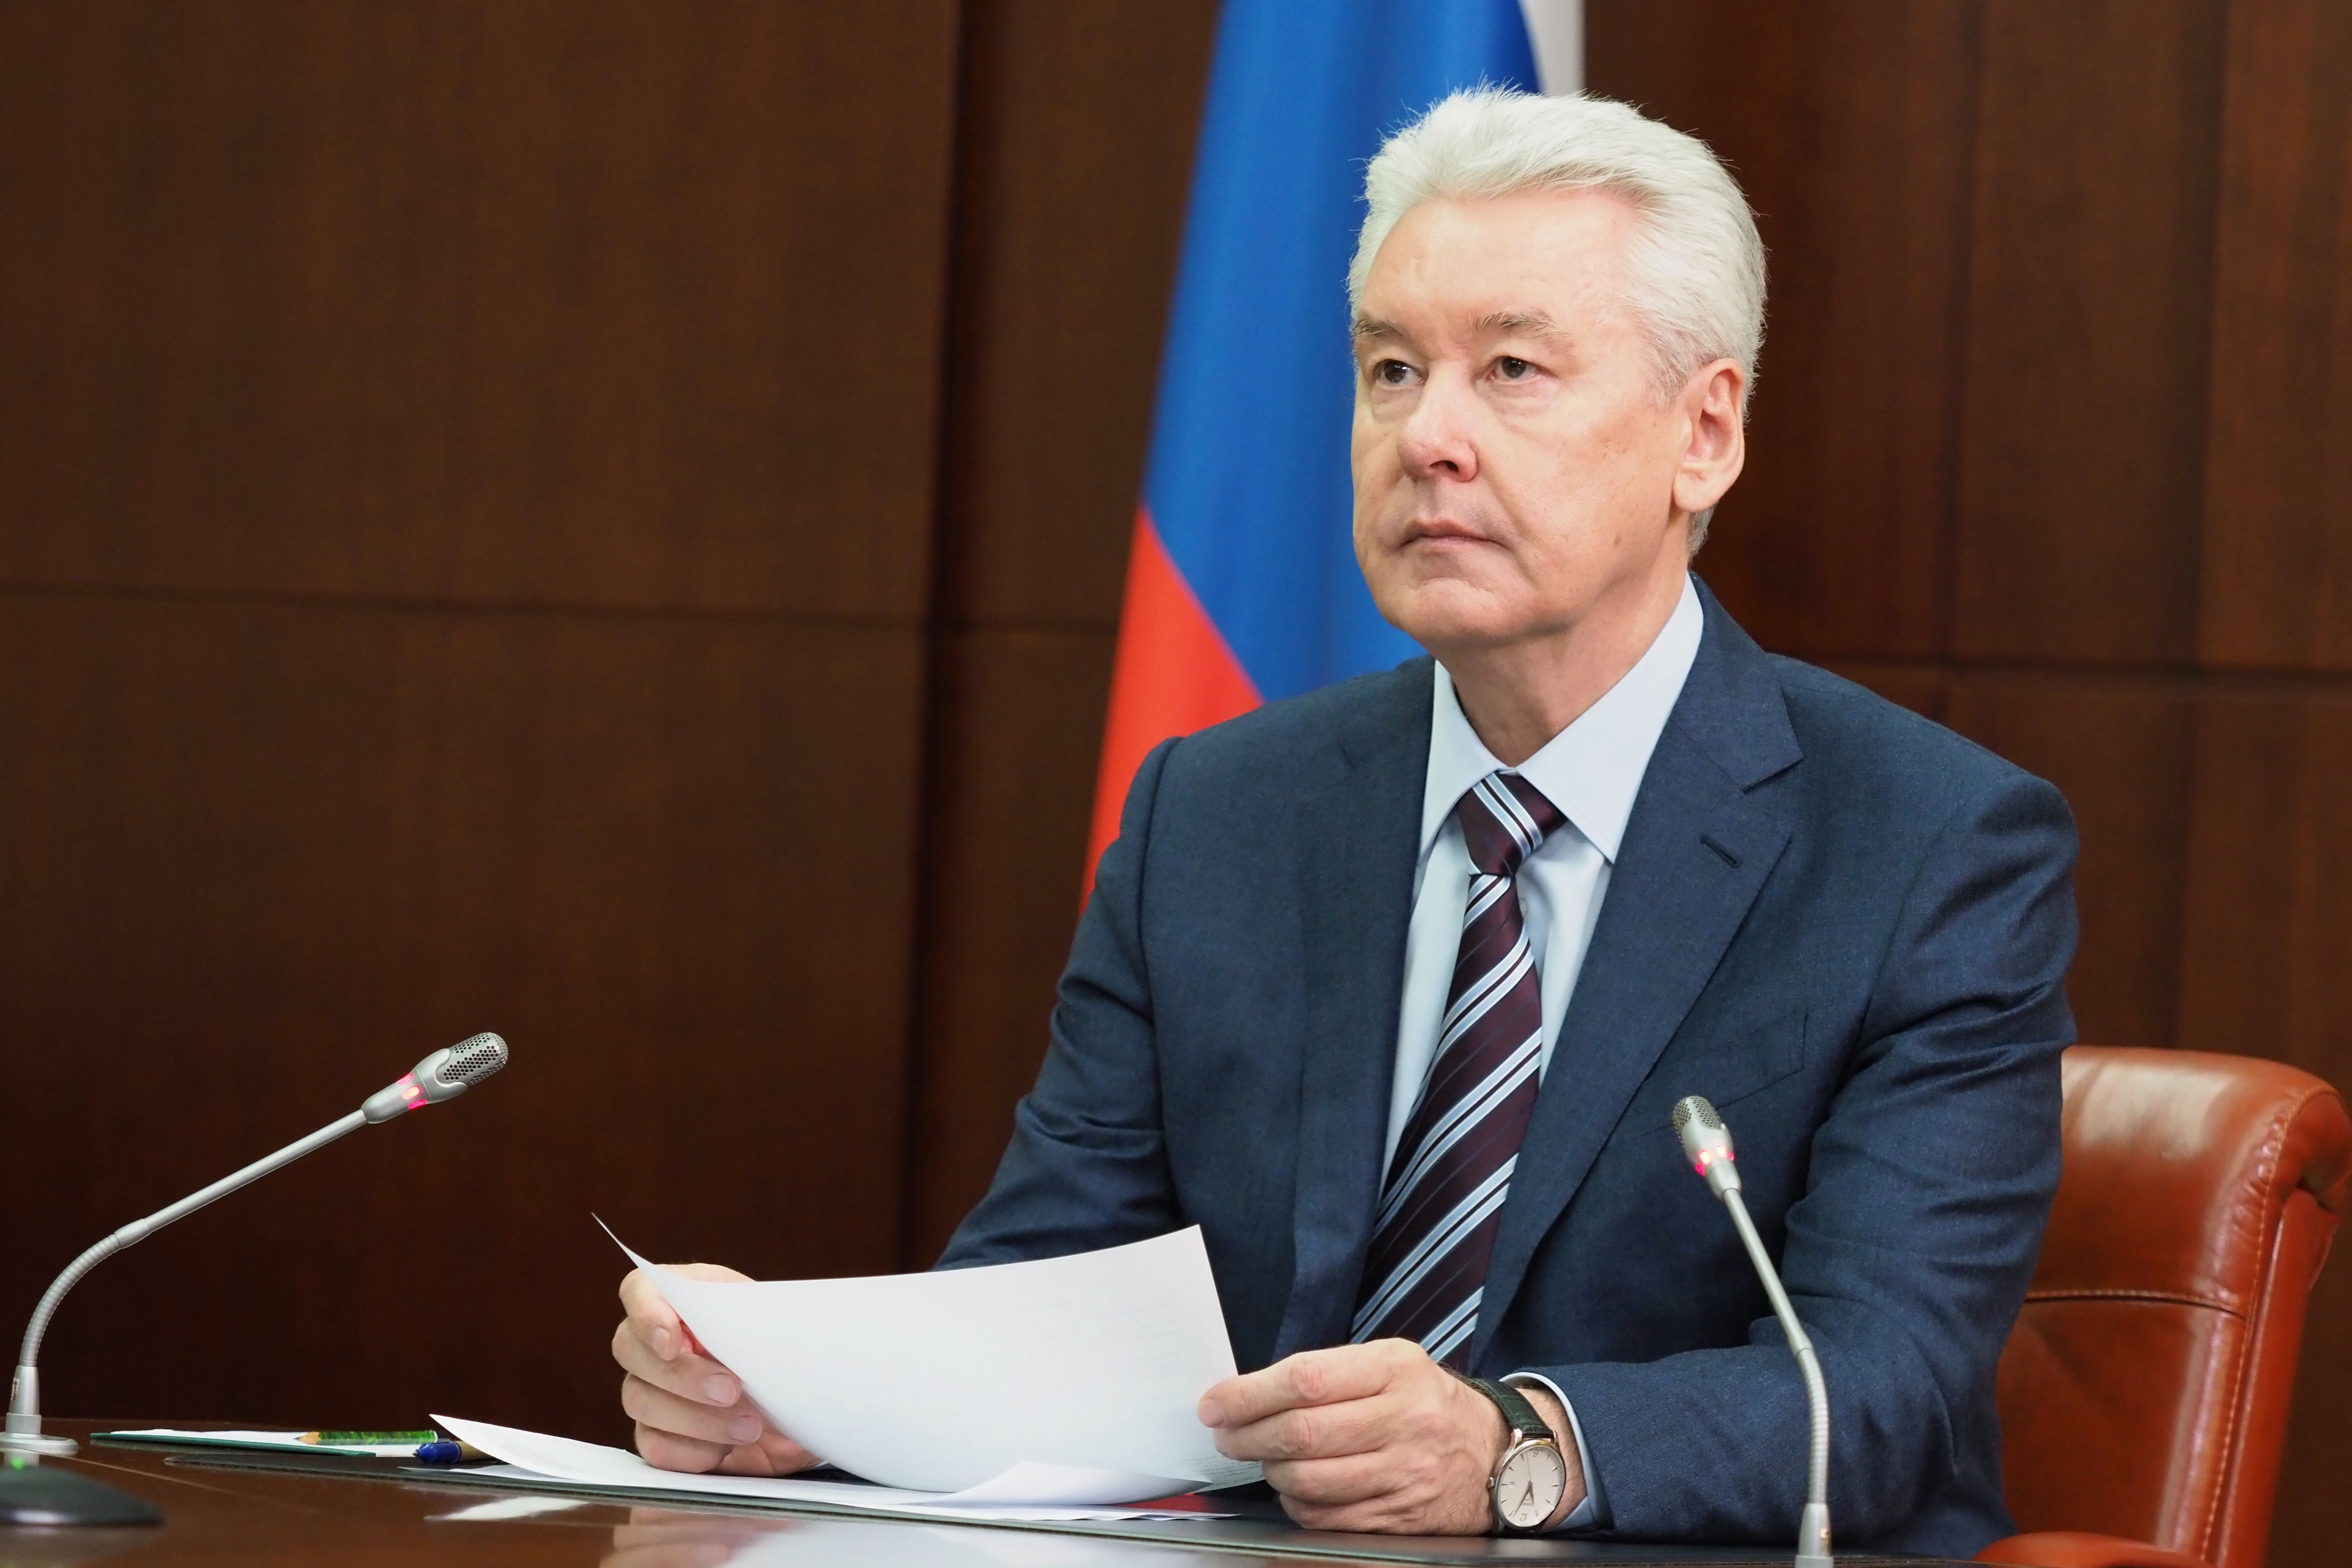 Сергей Собянин поздравил Михаила Мишустина с назначением на должность председателя Правительства России